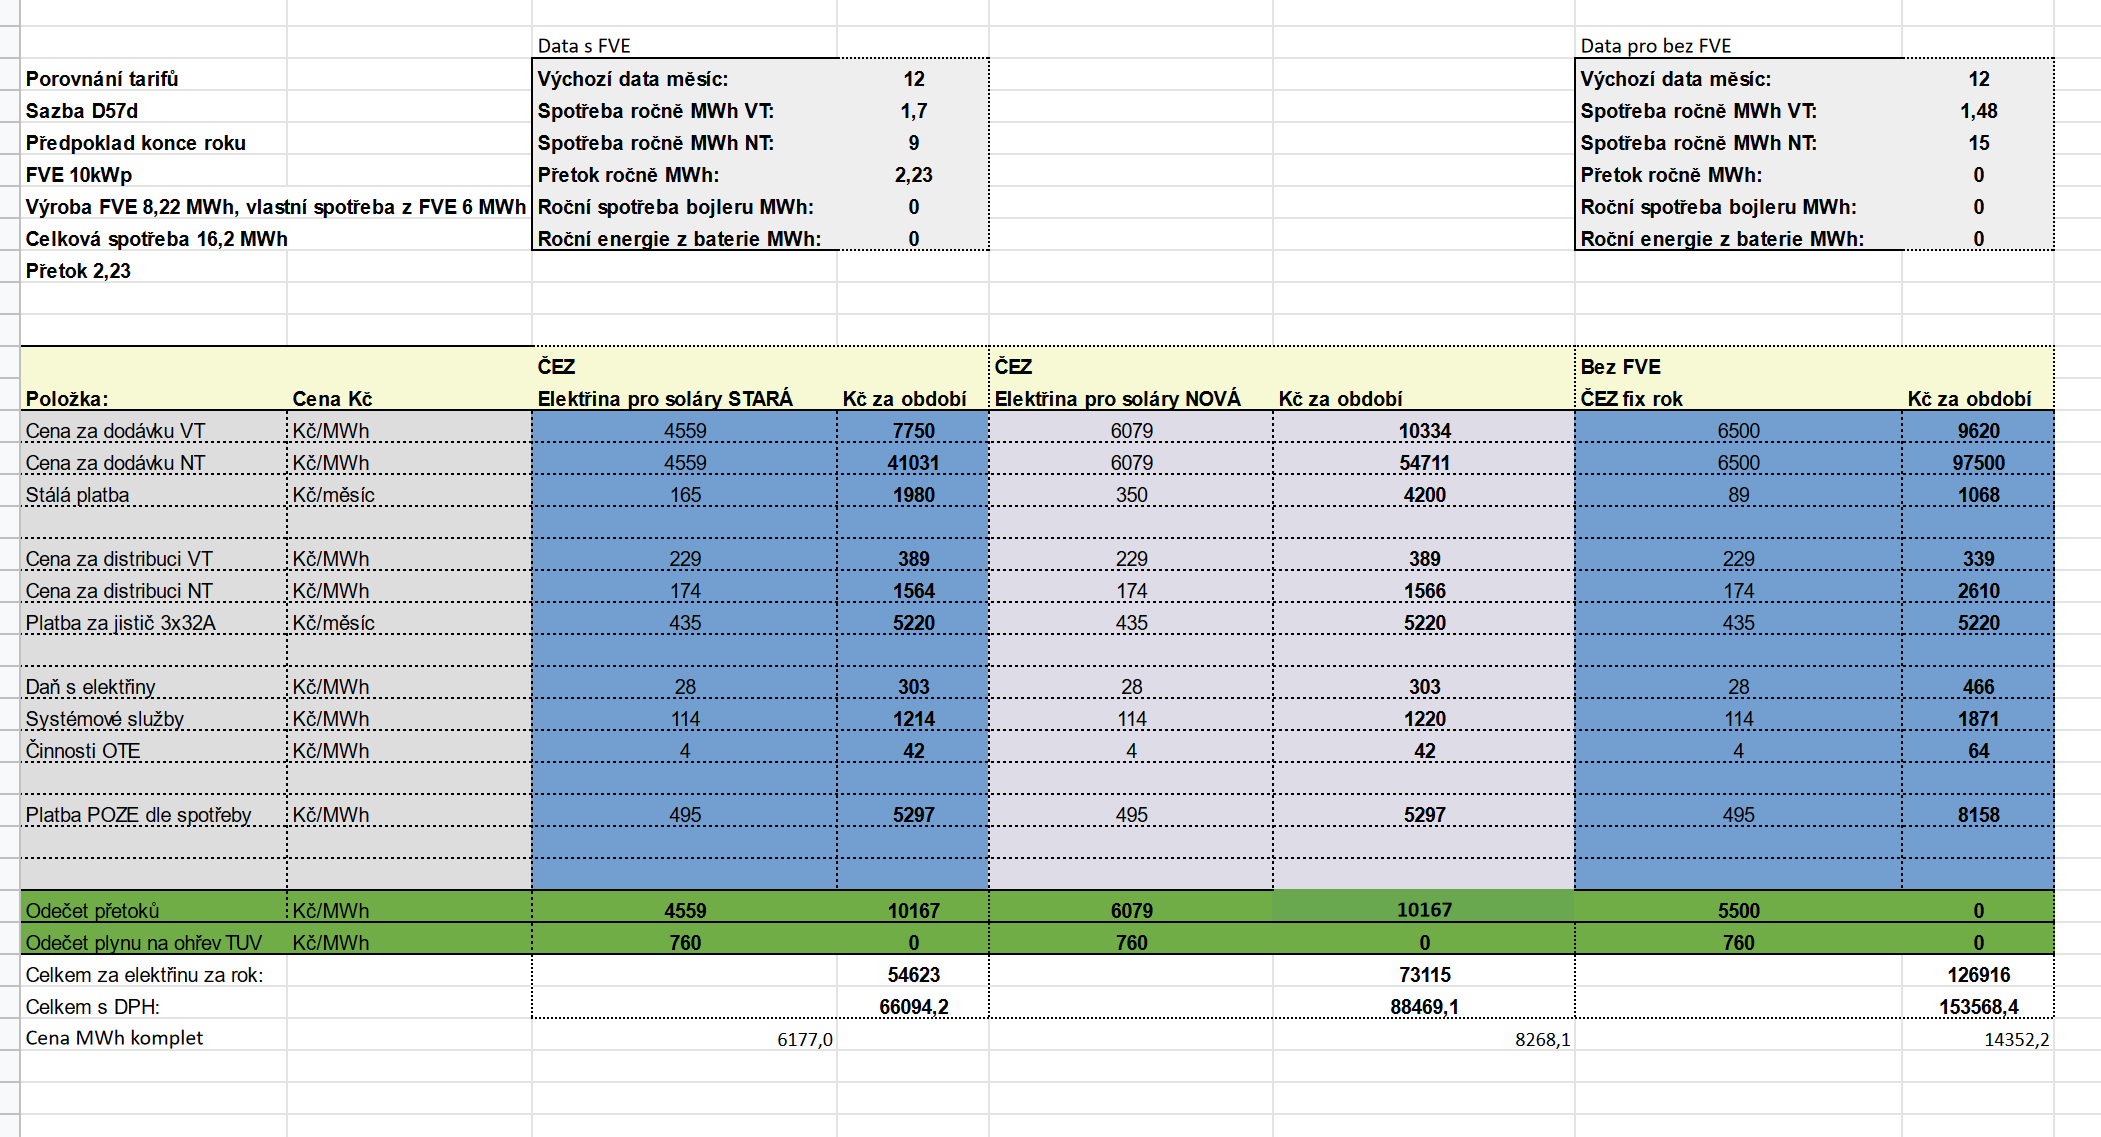 Screenshot 2022-07-21 at 09-59-00 Porovnání tarifů virtuální baterie od ČEZu a ostatních .xlsx.png